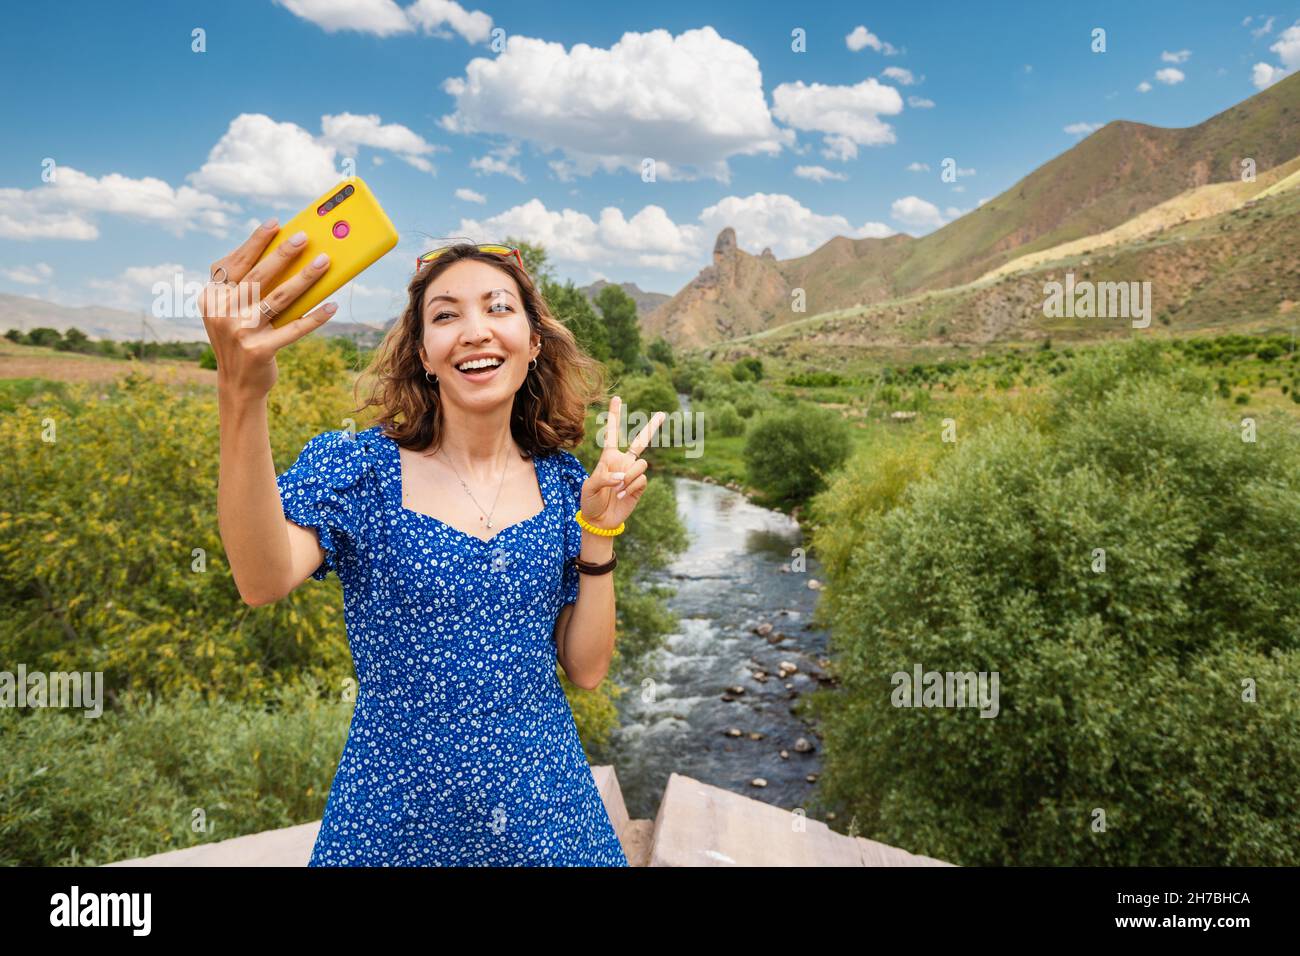 Touristenfrau am Aussichtspunkt, die Selfie-Fotos auf ihrem Smartphone am Hintergrund des Flusses und der Moiuntains machte. Reisen und Tourismus in Armenien Stockfoto